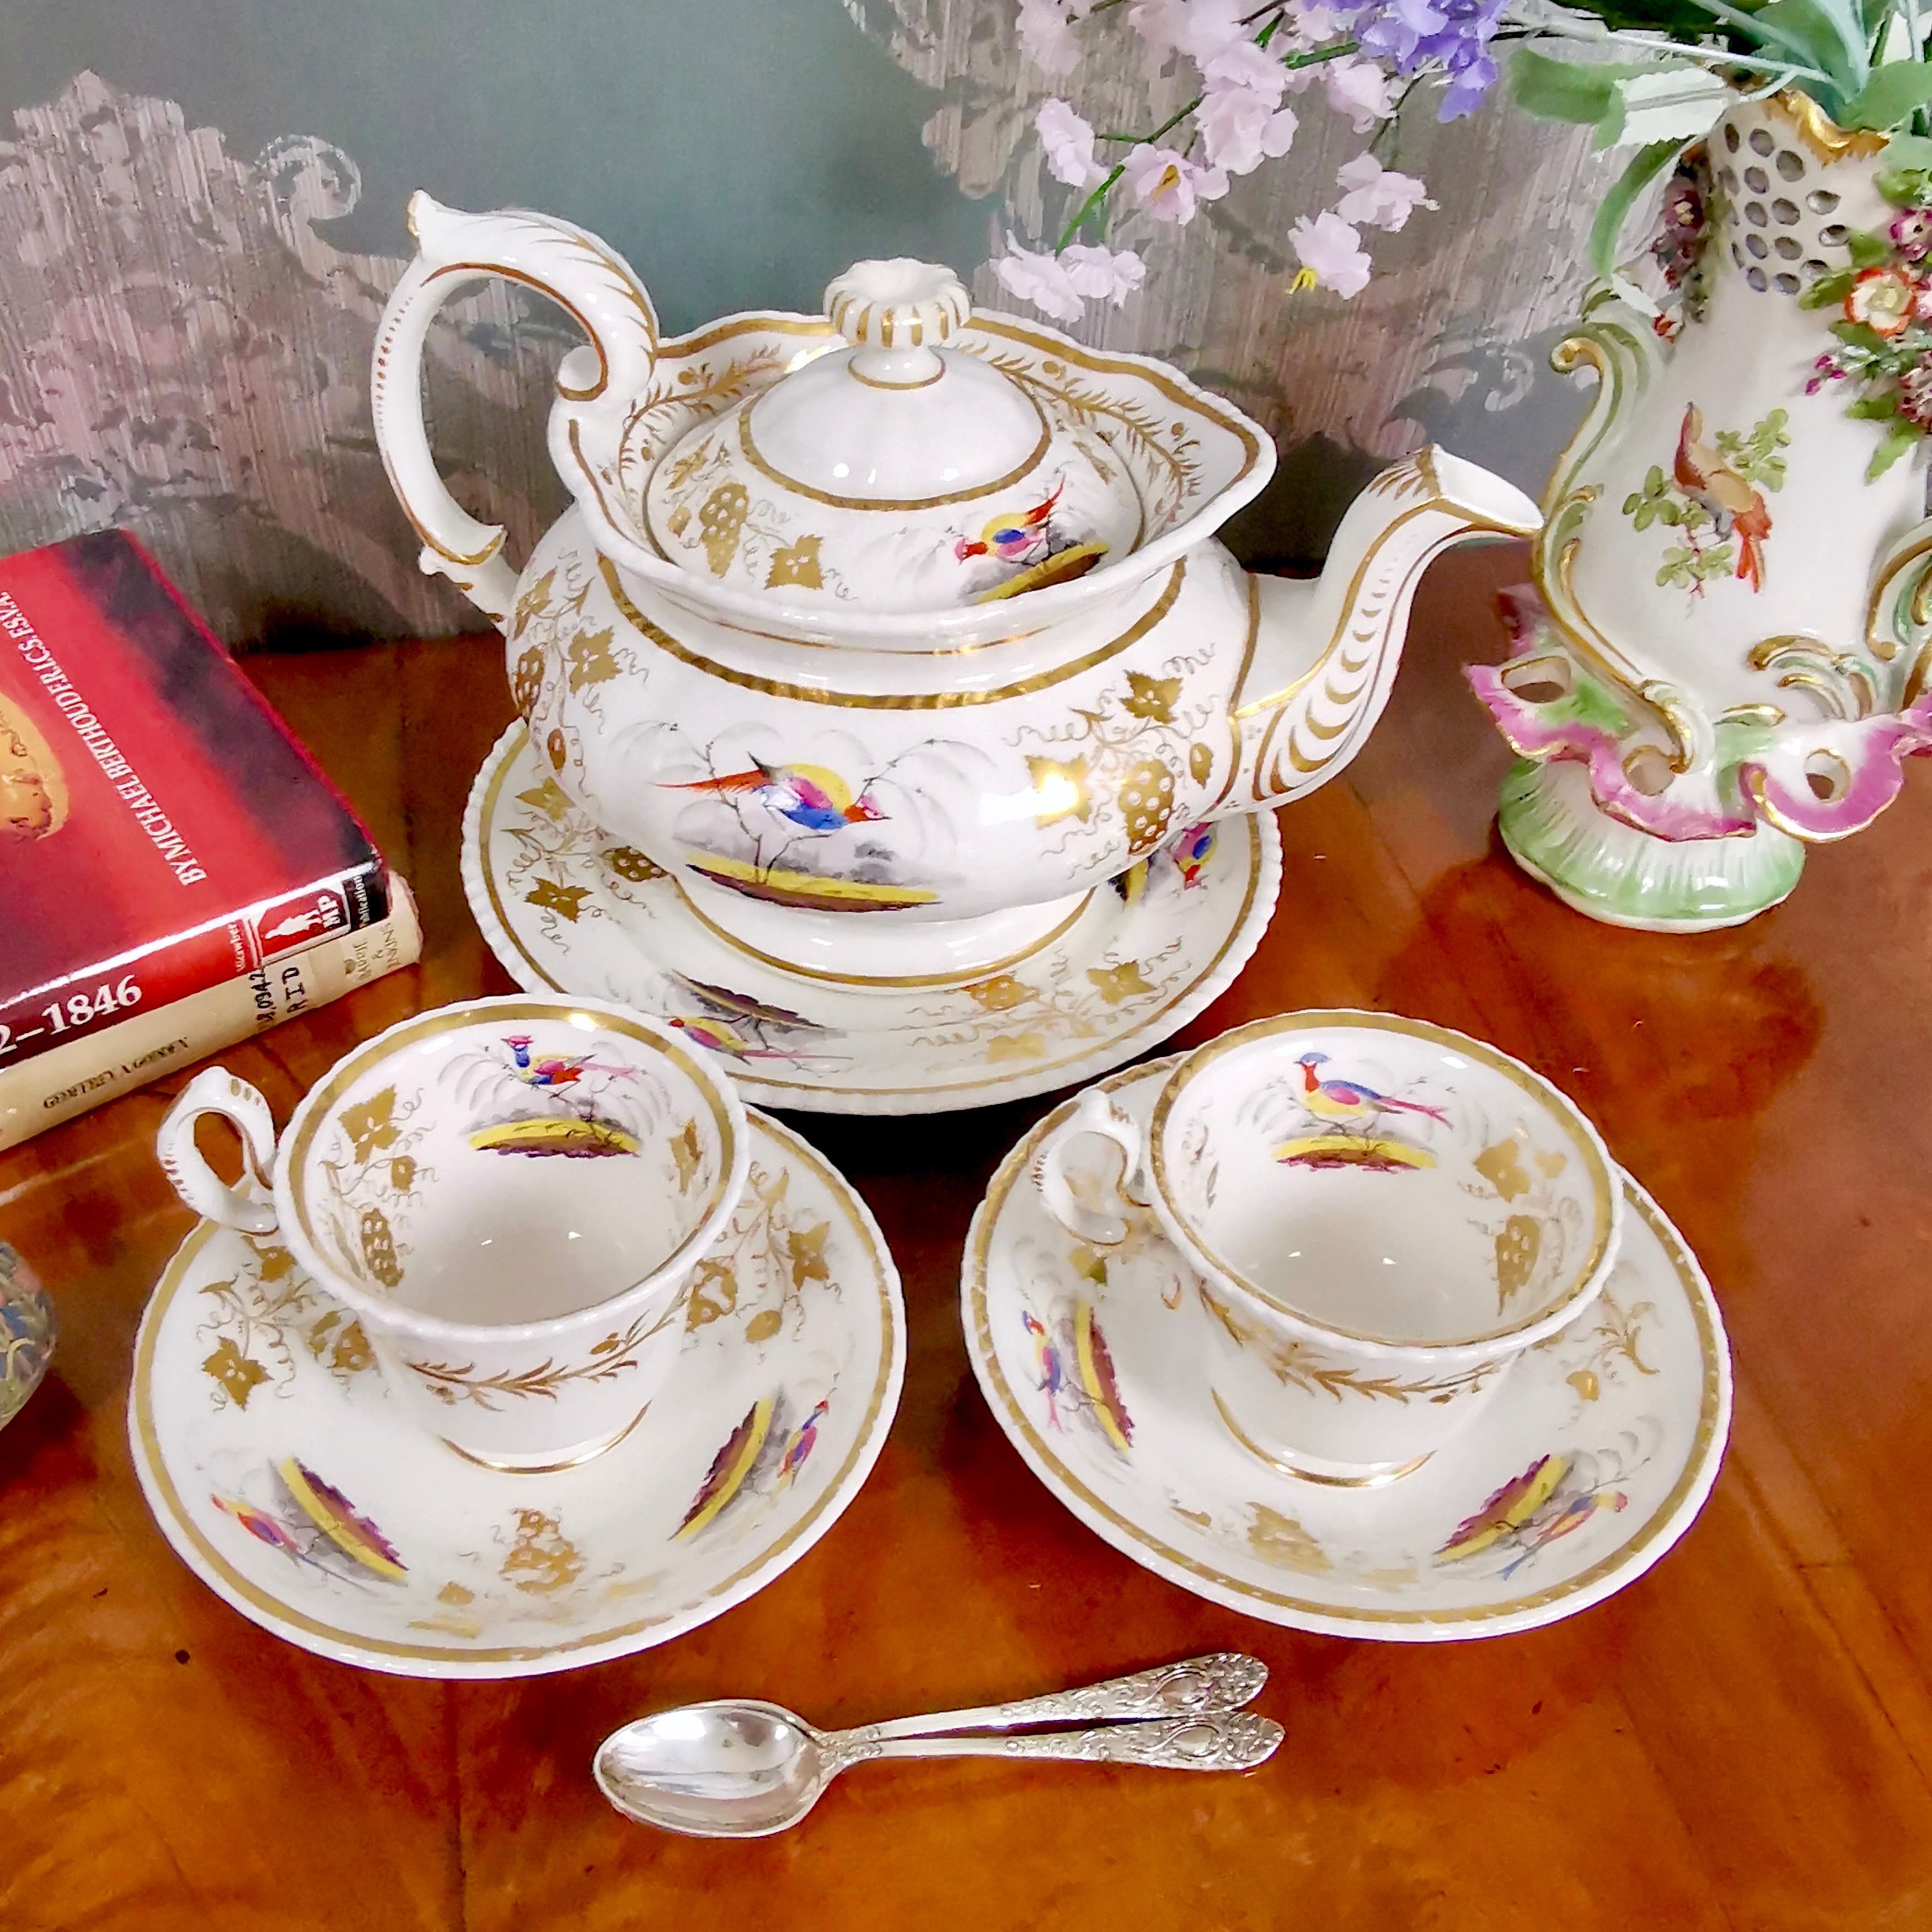 Il s'agit d'un service à thé produit par Grainger Worcester vers 1830, à l'époque du renouveau rococo. L'ensemble est décoré d'oiseaux et se compose d'une théière, d'un support de théière ou d'un plat à gâteau et de deux tasses et soucoupes